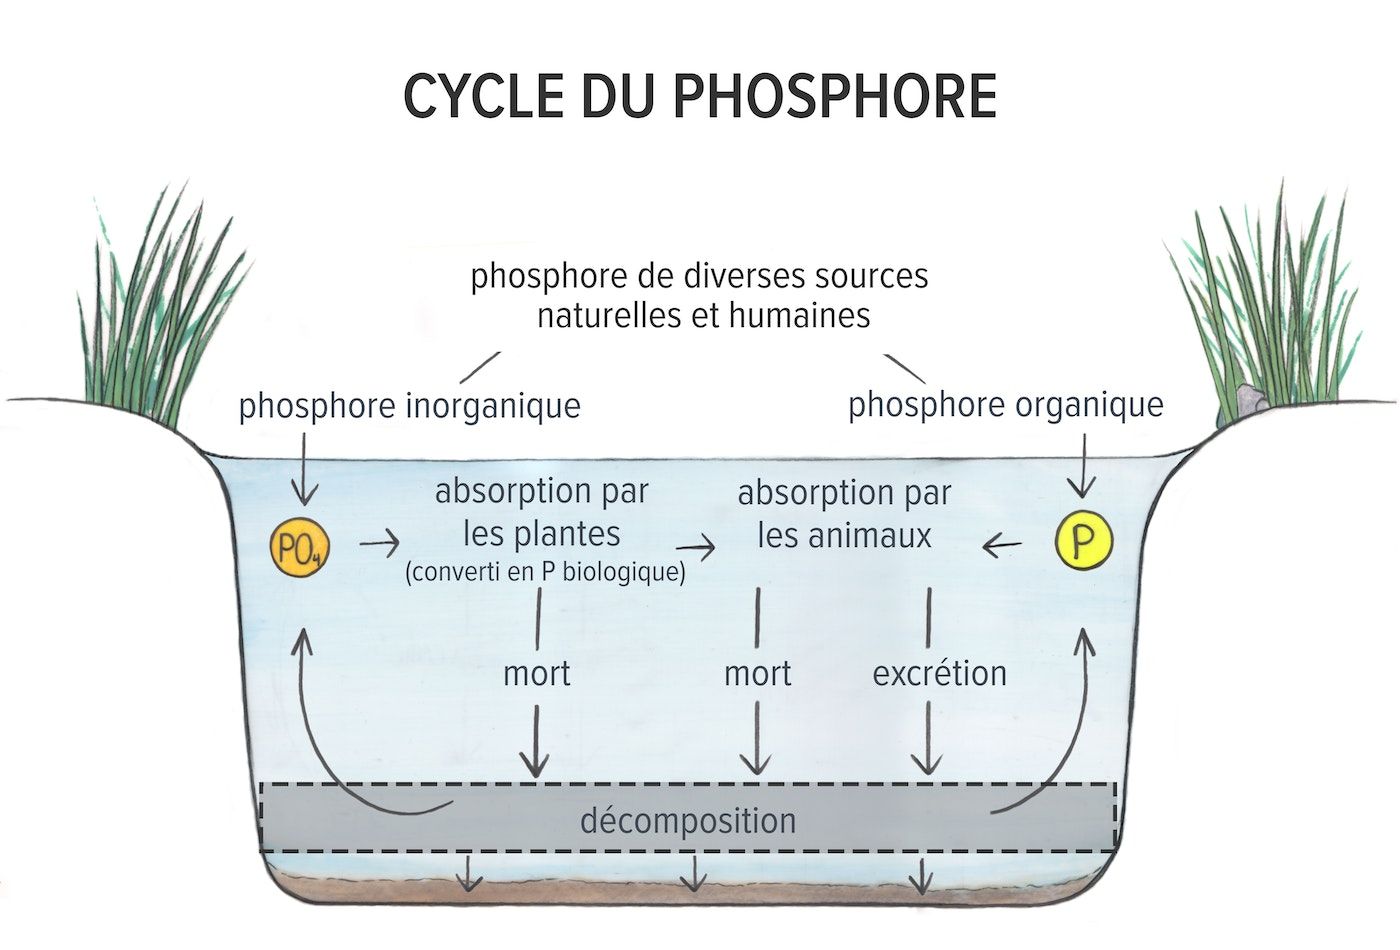 Image dessinée à la main d'une coupe transversale d'un étang montrant un diagramme du cycle du phosphore. Le phosphore provenant de diverses sources naturelles et humaines pénètre dans l'eau sous forme de phosphore inorganique et organique. Le phosphore organique est absorbé par les animaux. Le phosphore inorganique est transformé en phosphore organique lorsqu'il est absorbé par les plantes, puis par les animaux. Après la décomposition des plantes et des animaux morts et leur excrétion, le phosphore réintègre le cycle sous des formes organiques et inorganiques. Une partie du phosphore provenant de la décomposition de la matière organique se dépose dans les sédiments.